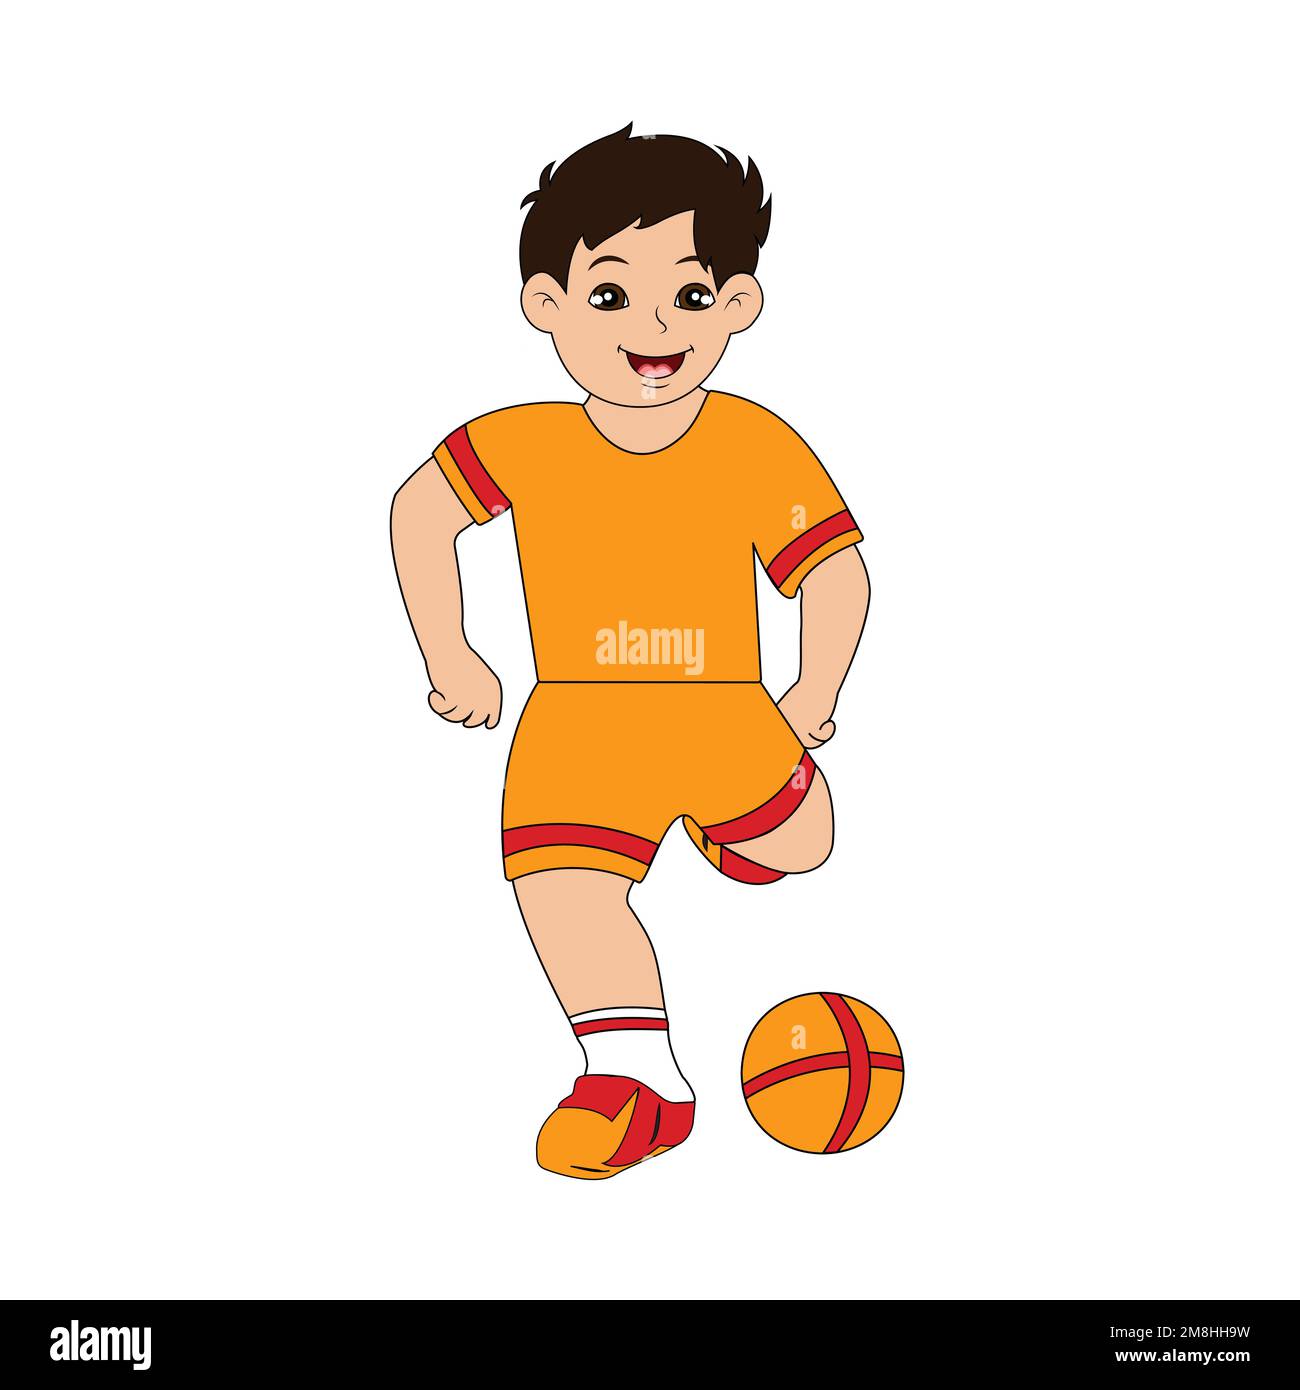 Cute boy playing football vector design Stock Vector